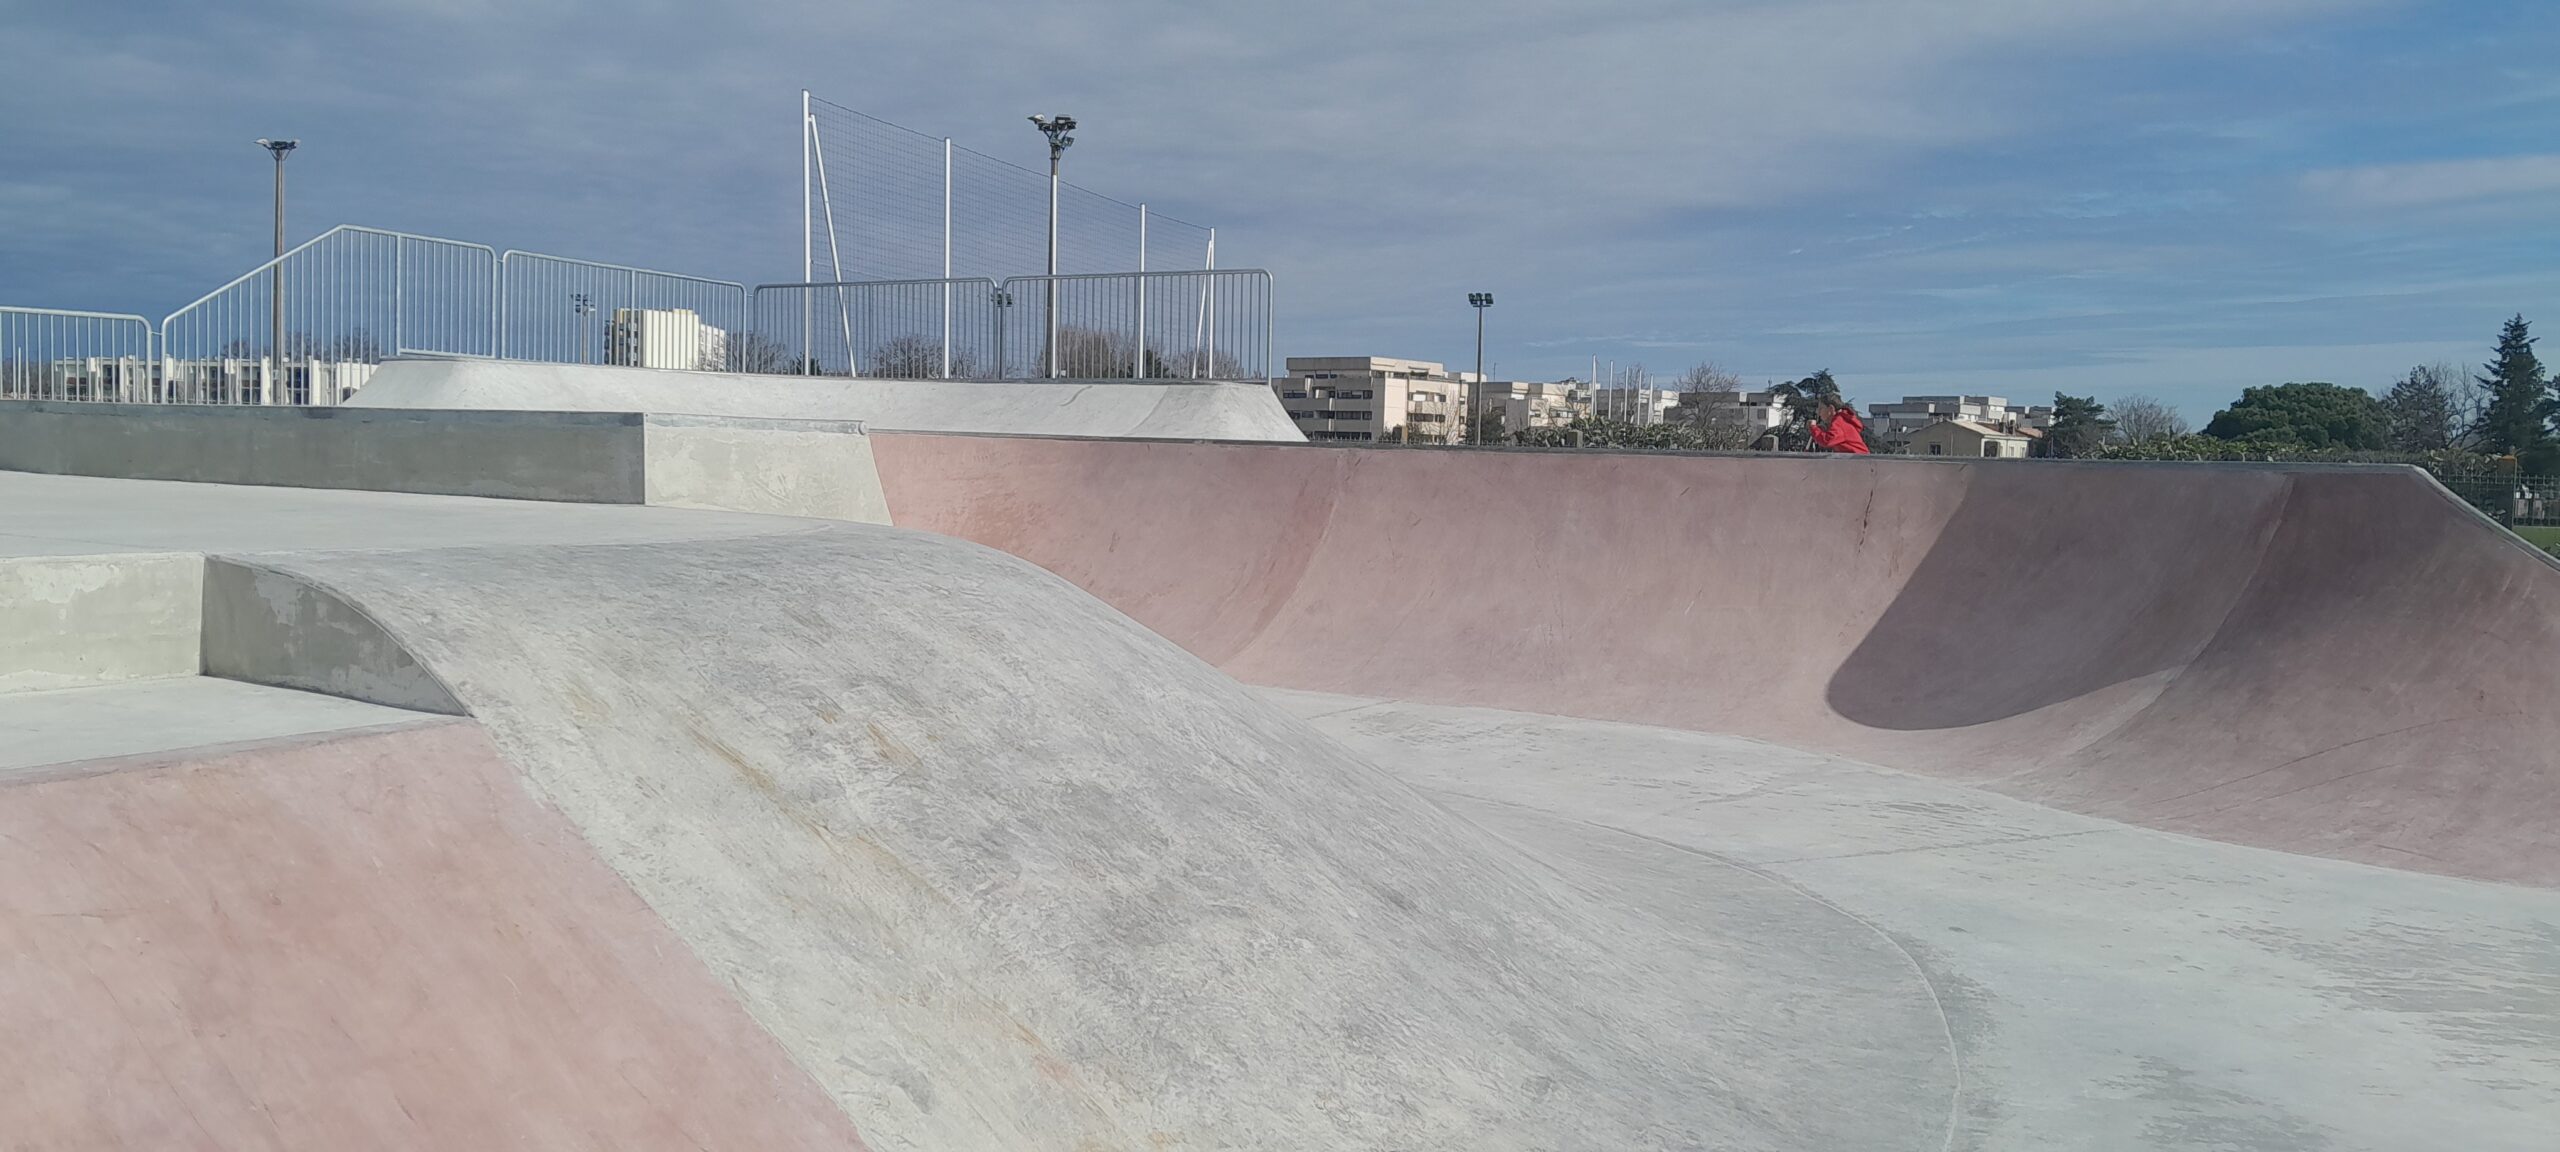 Le nouveau Skate Park de Mérignac ouvrira bientot